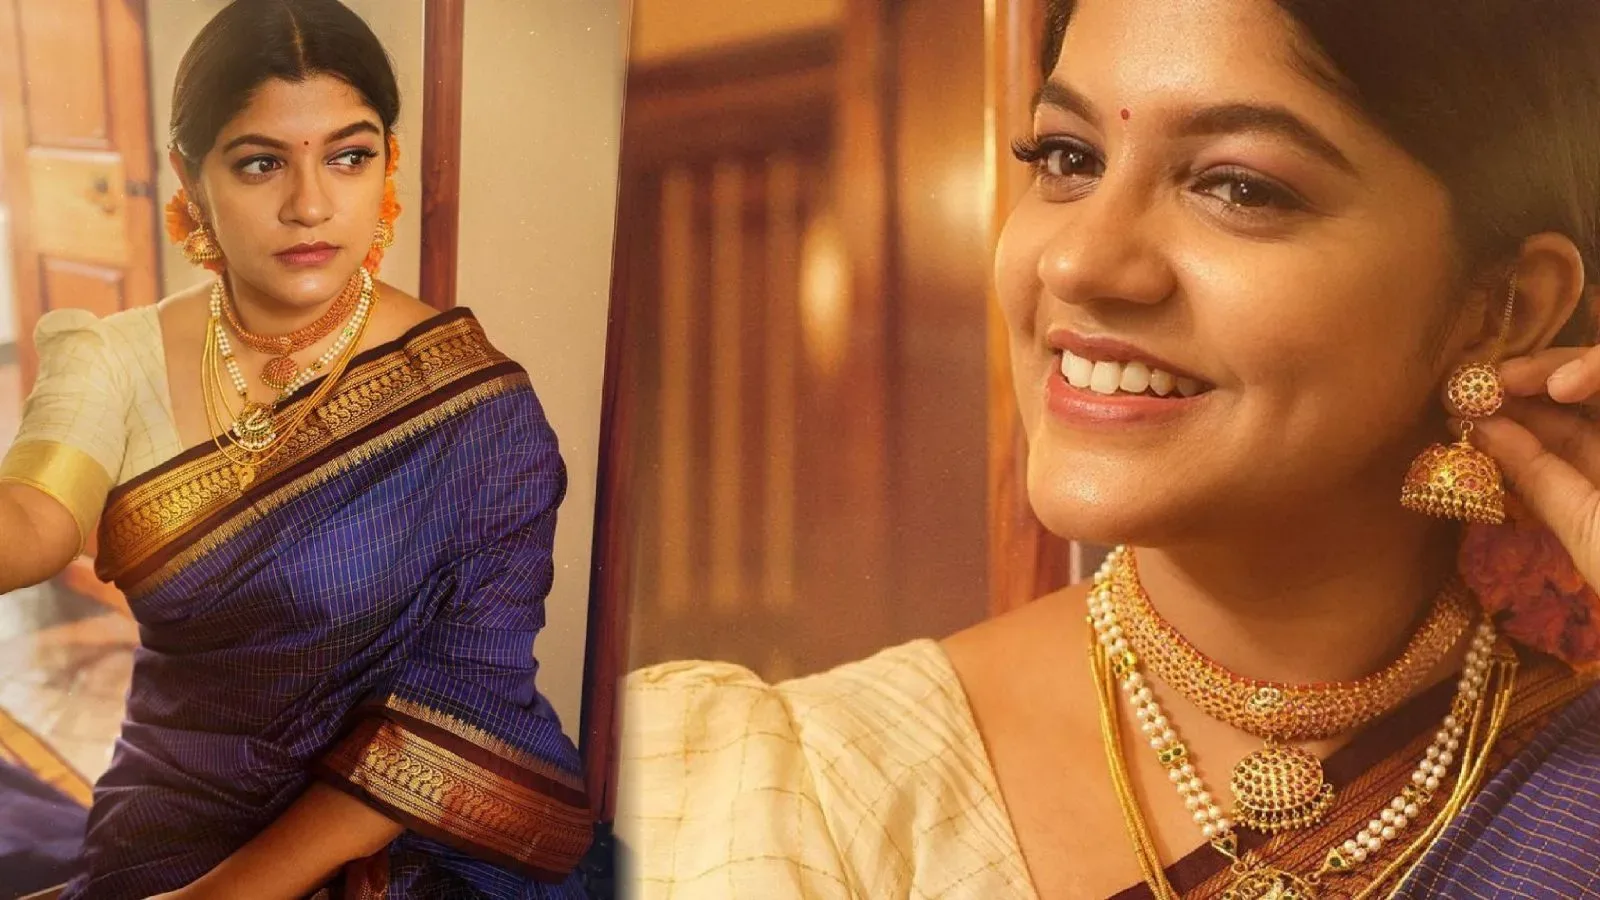 Actress Aparna Balamurali looks gorgeous in traditional Indian Saree